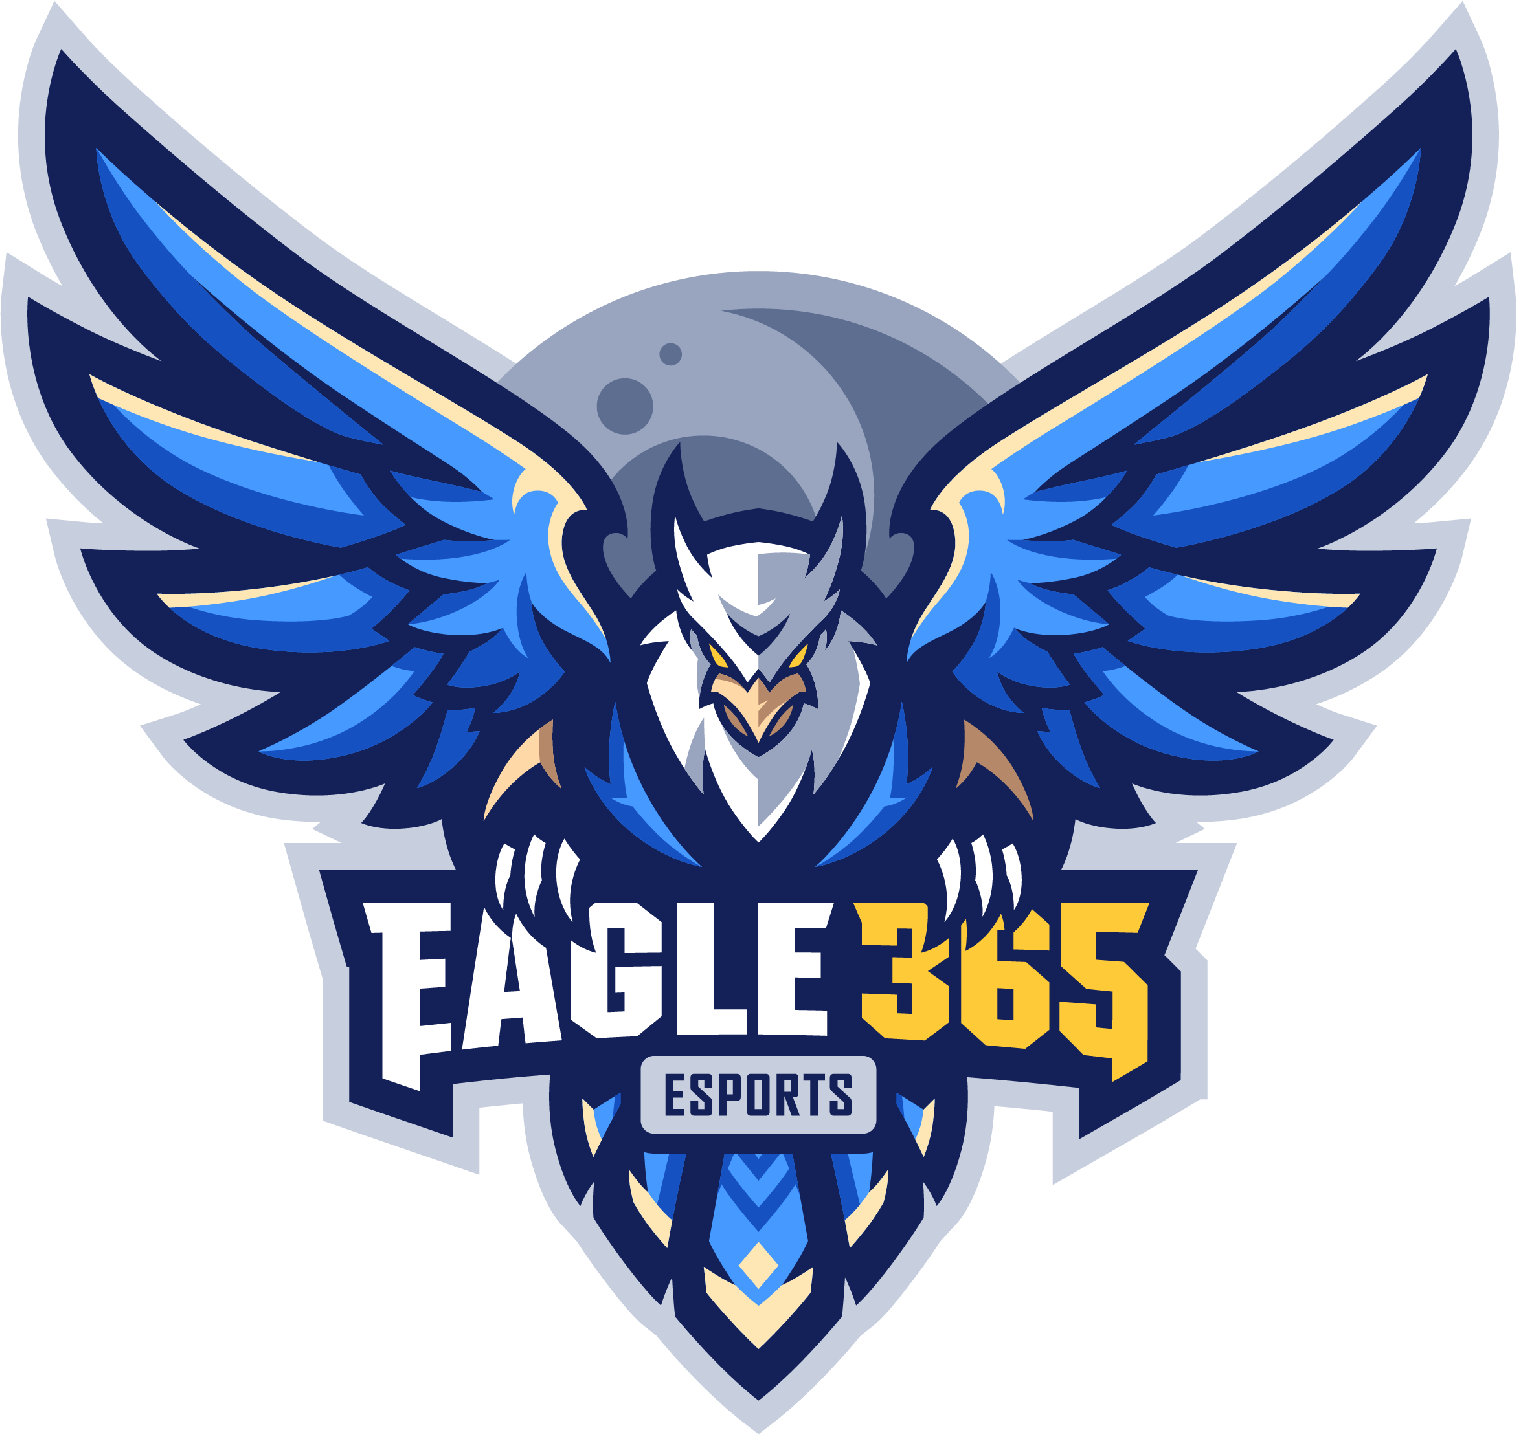 Logo Eagle365 Esports.